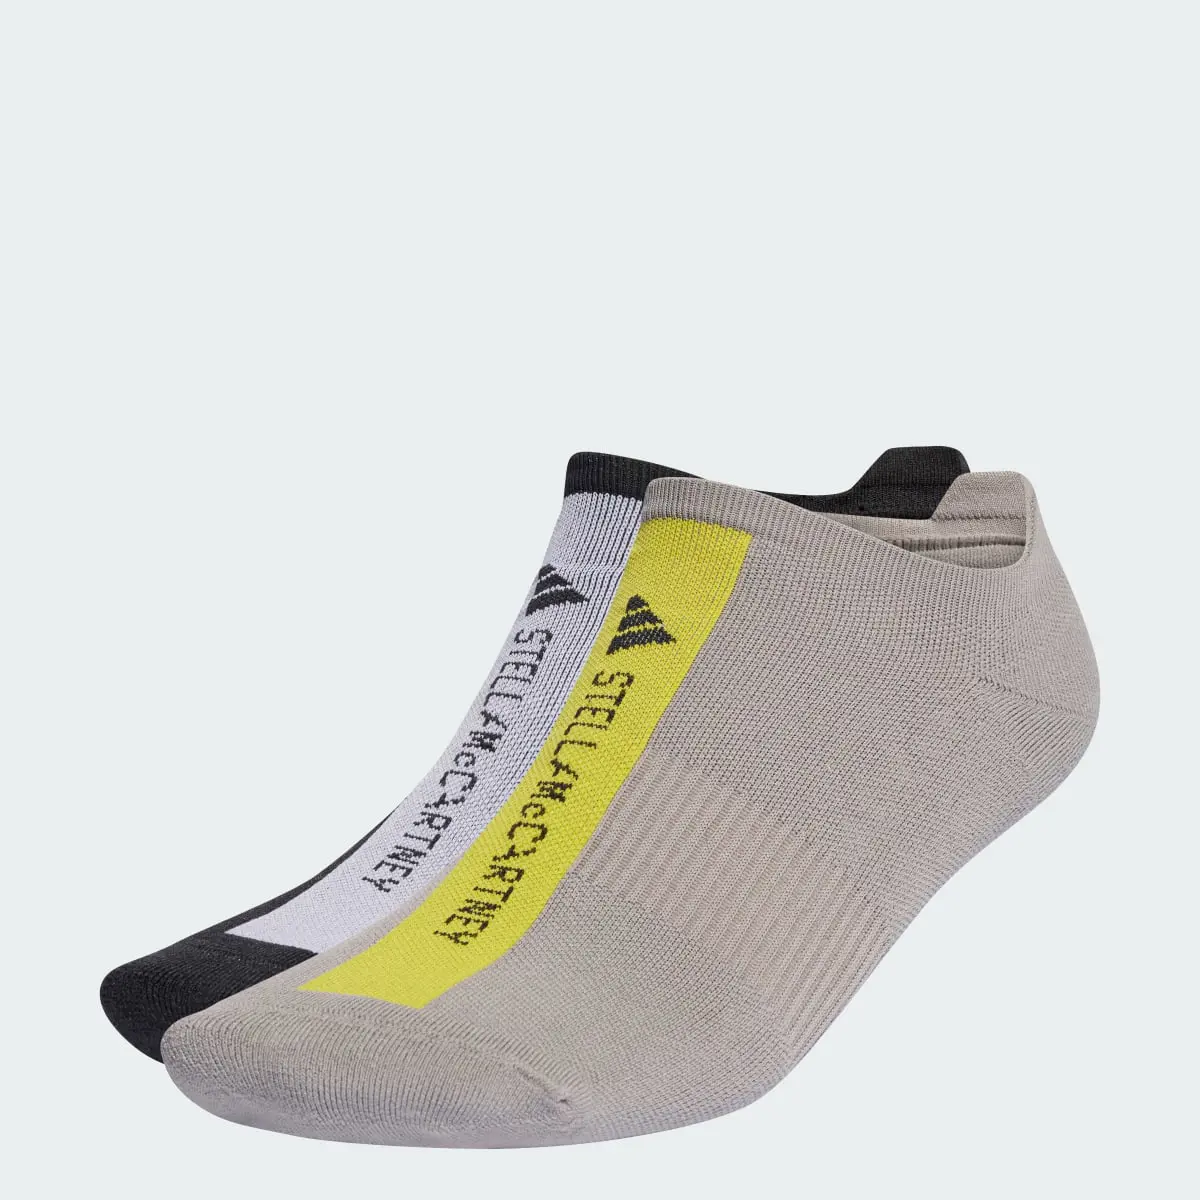 Adidas by Stella McCartney Low Socks. 1